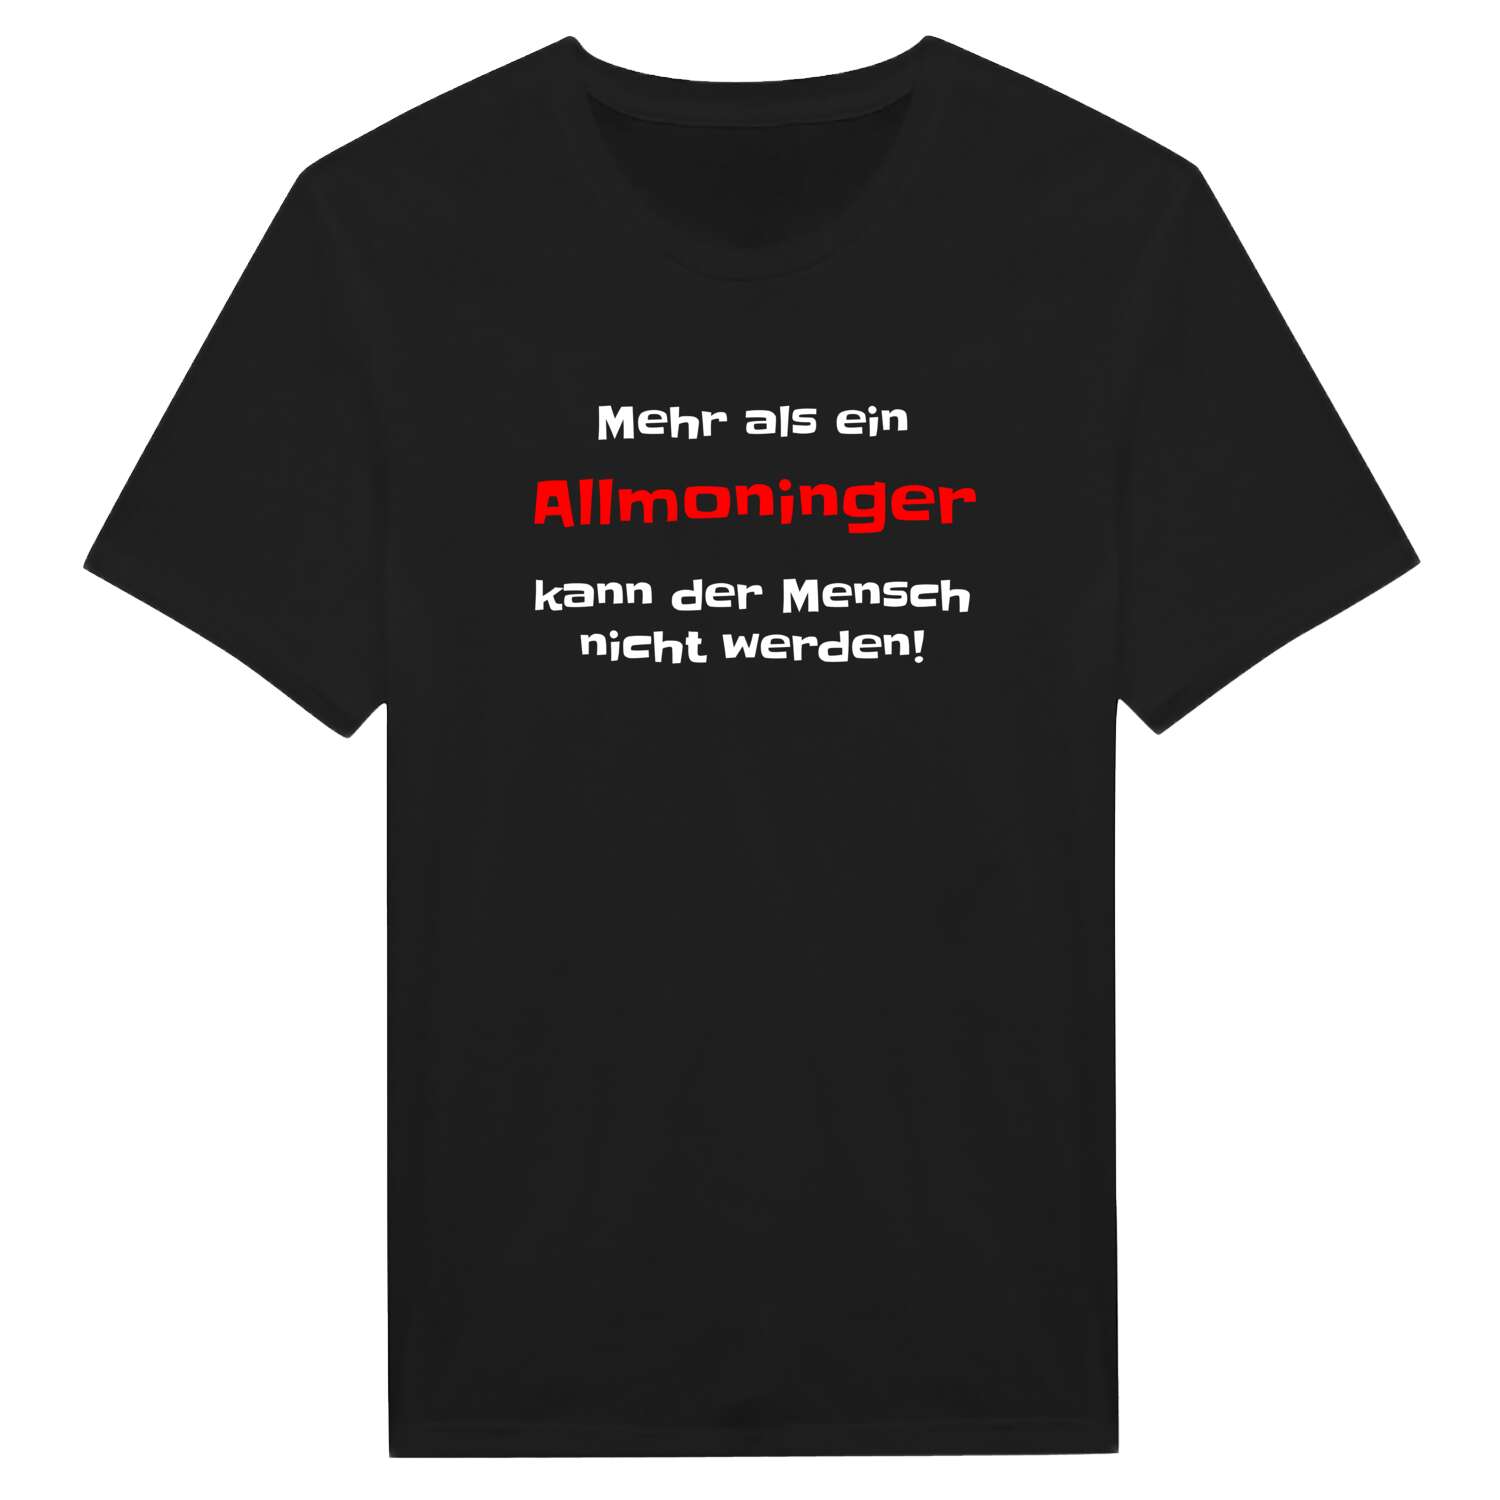 Allmoning T-Shirt »Mehr als ein«